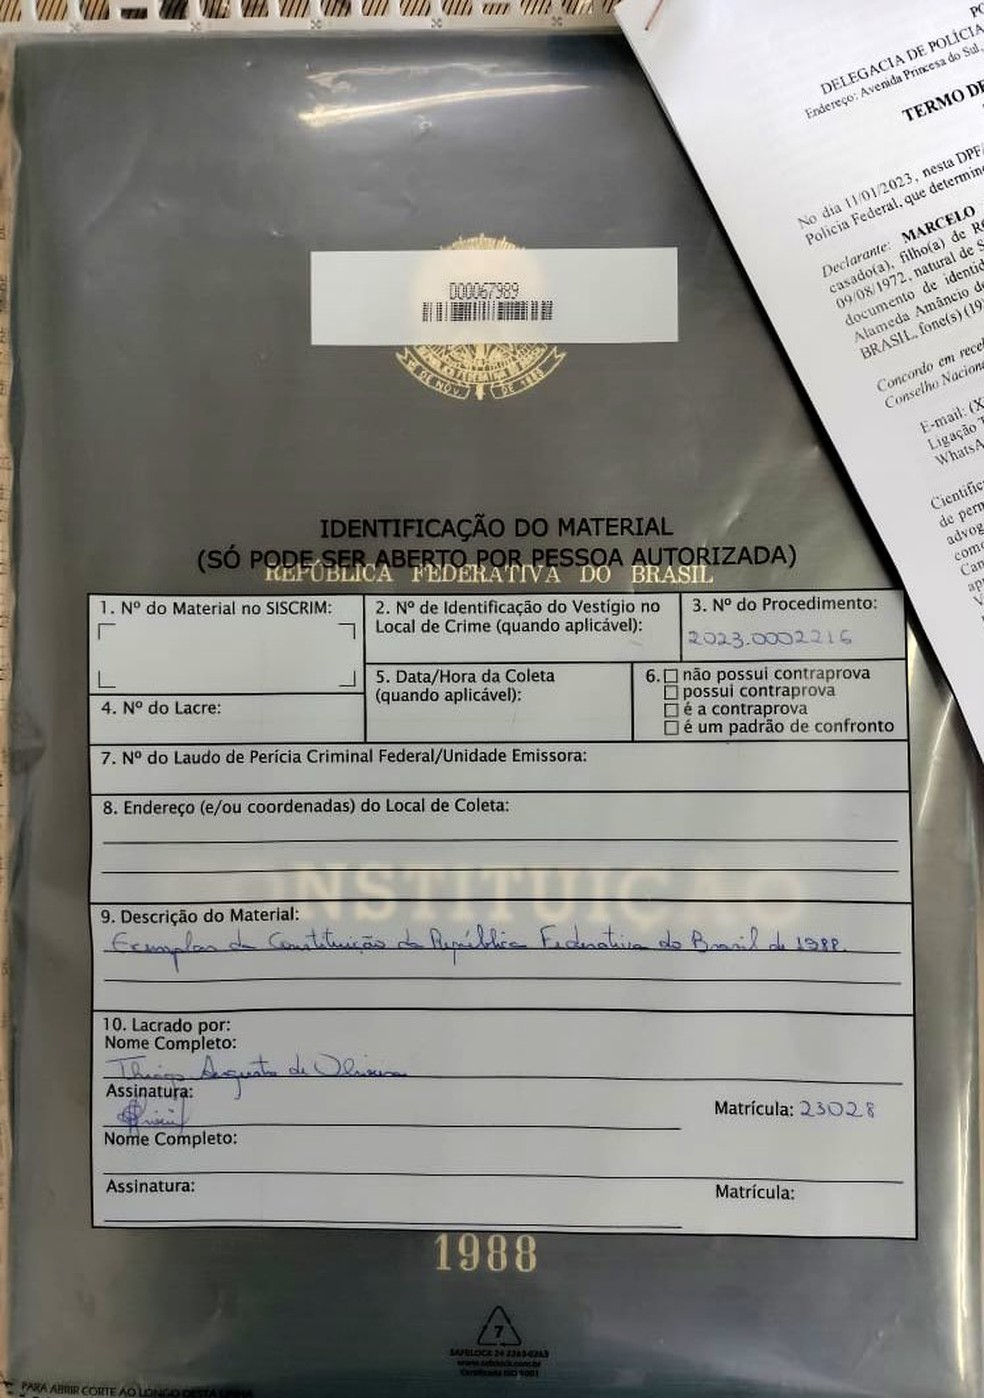 Réplica da Constituição de 1988 levada do STF durante ataques em Brasília é recuperada no Sul de MG — Foto: Reprodução/Twitter Flávio Dino